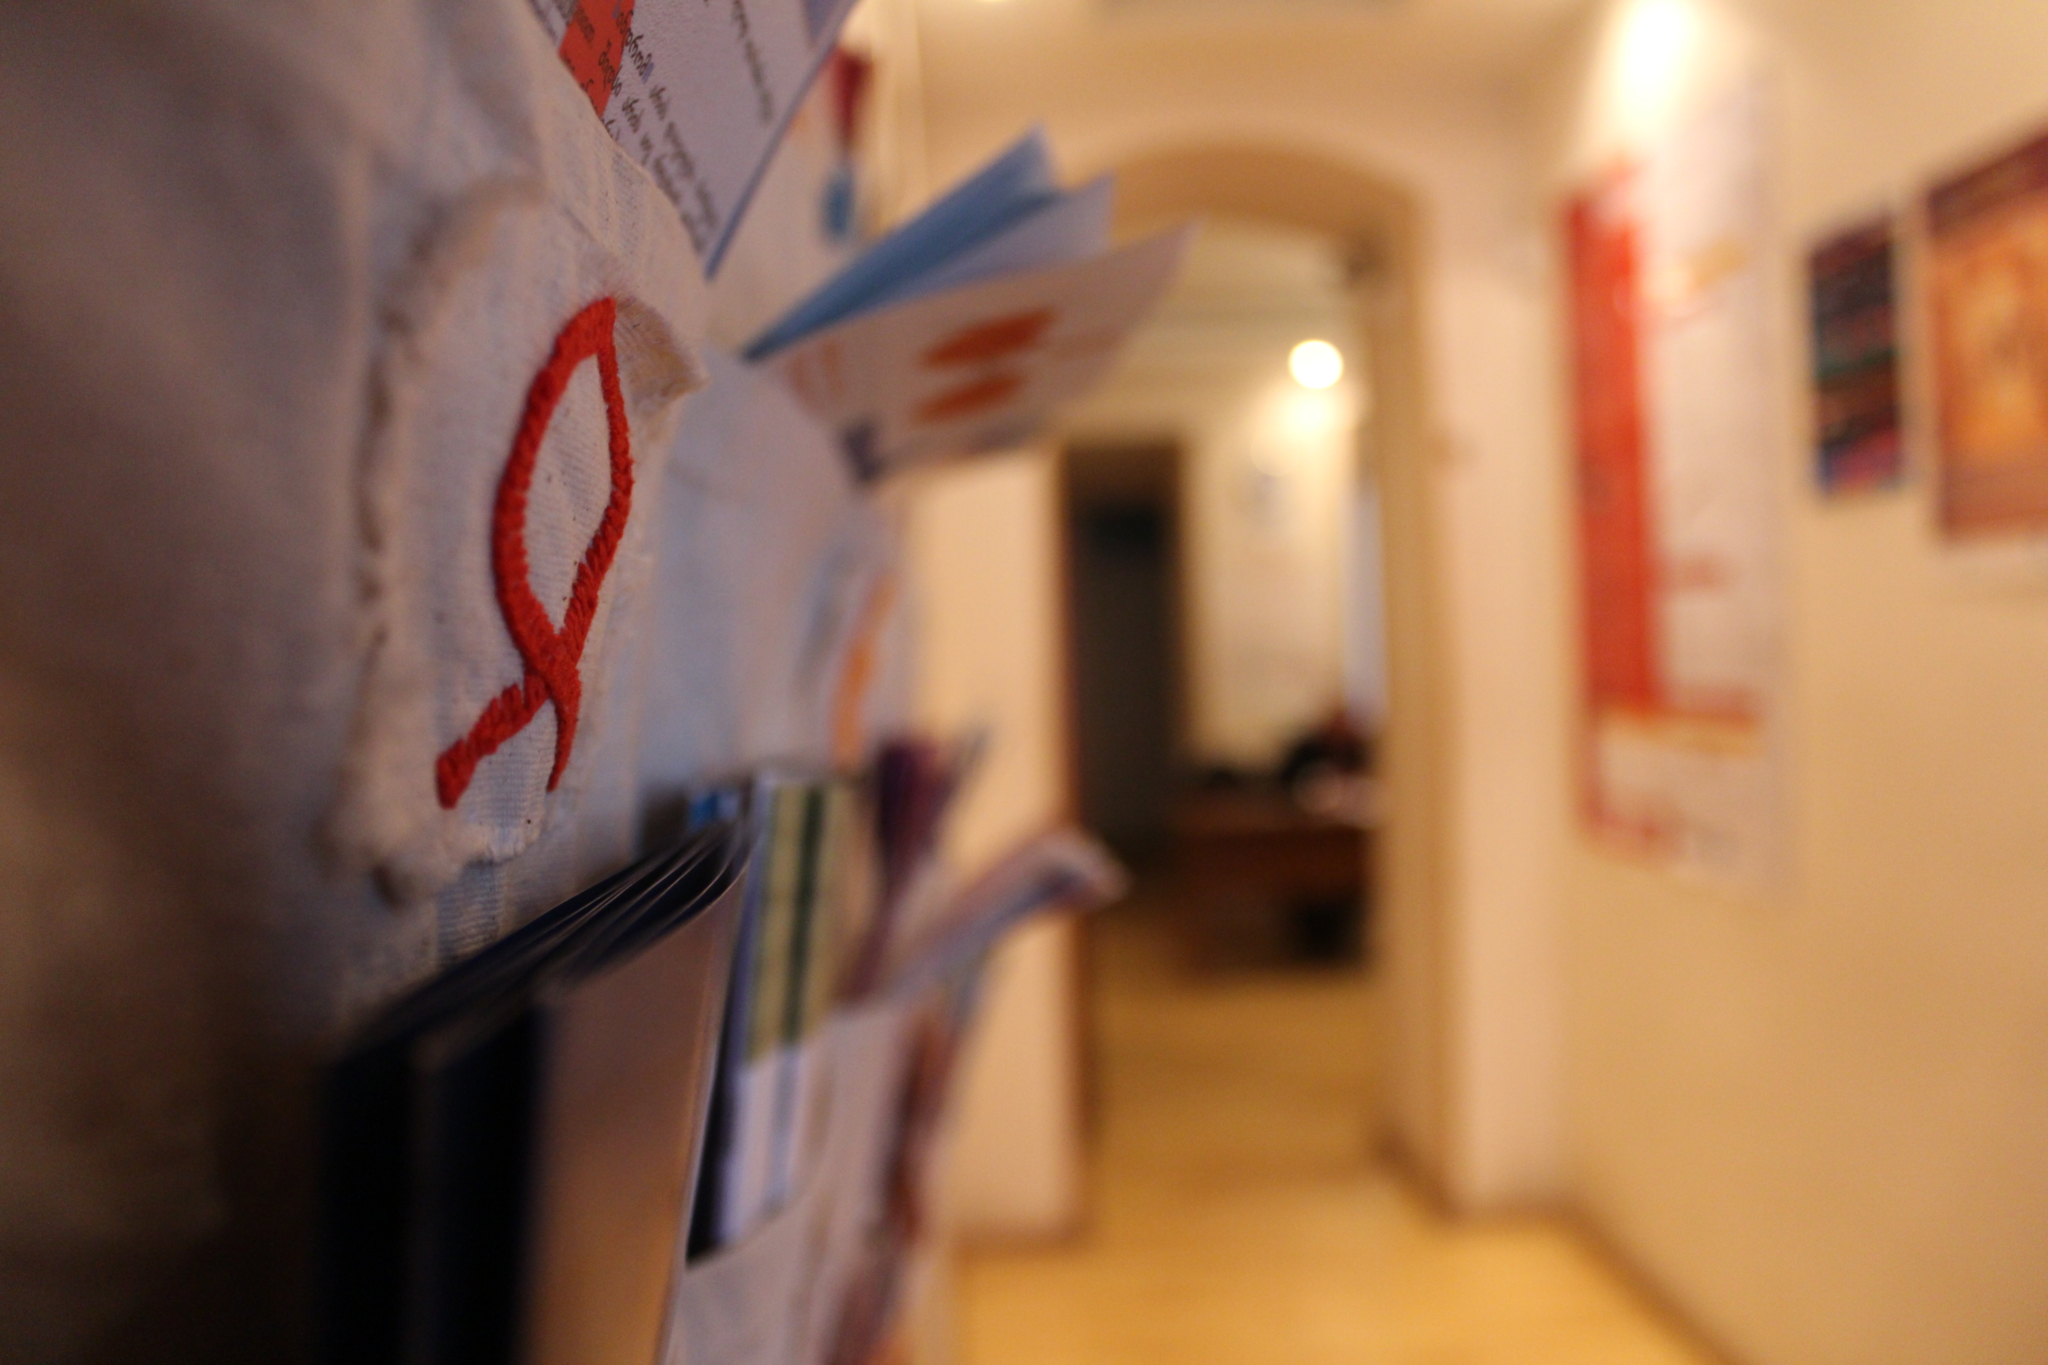 Каждый день сервис-центры принимают множество ВИЧ-инфицированных. Фото Нино Меманишвили, JAMnews